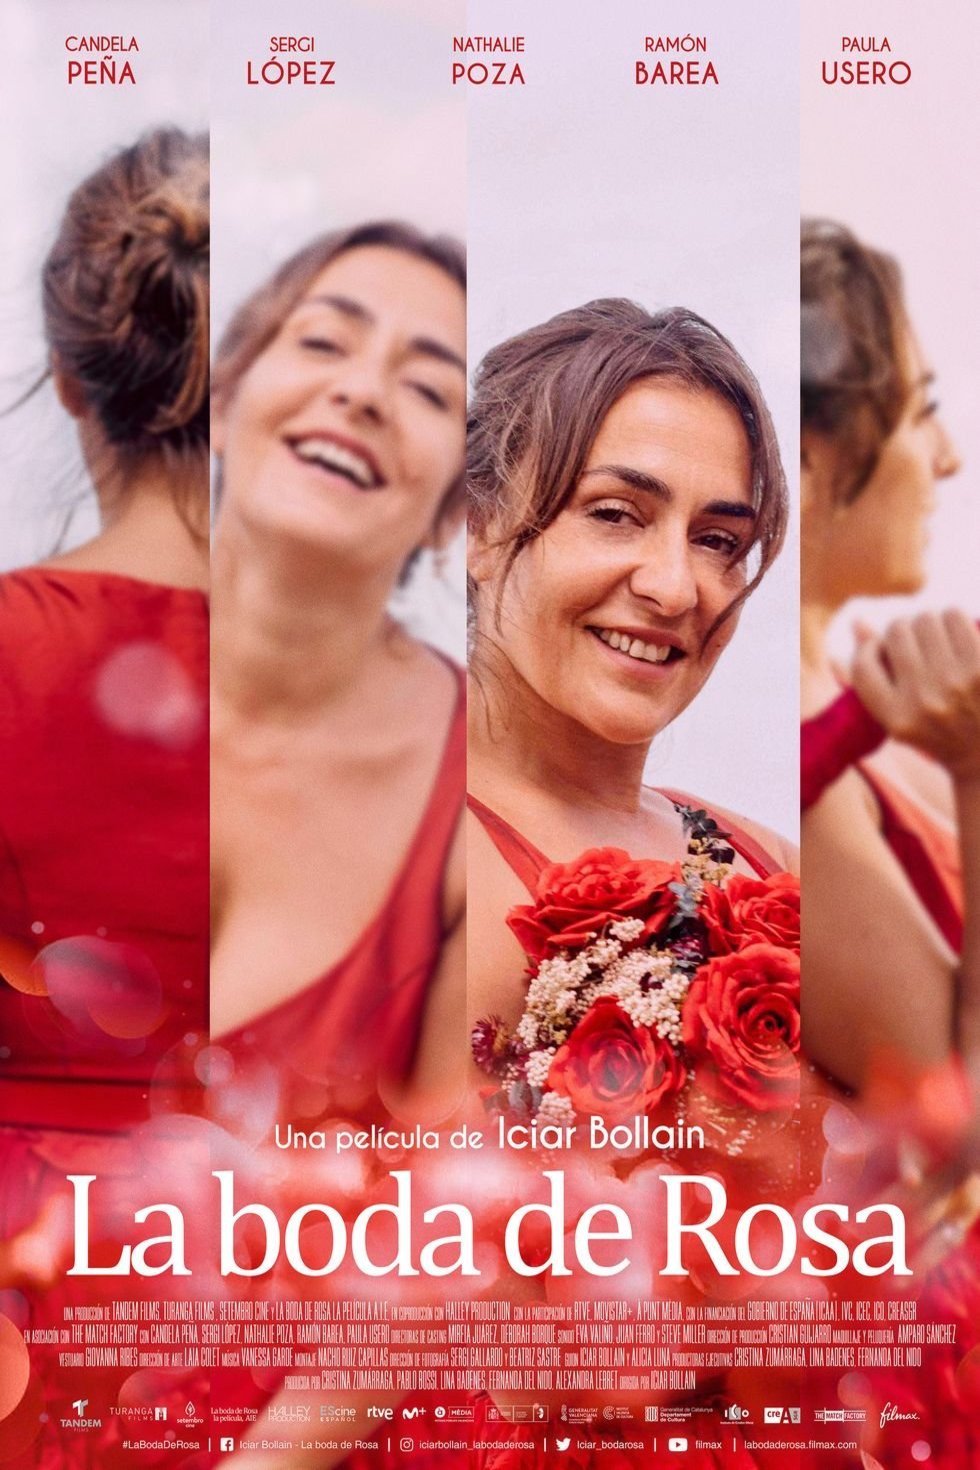 Spanish poster of the movie La boda de Rosa